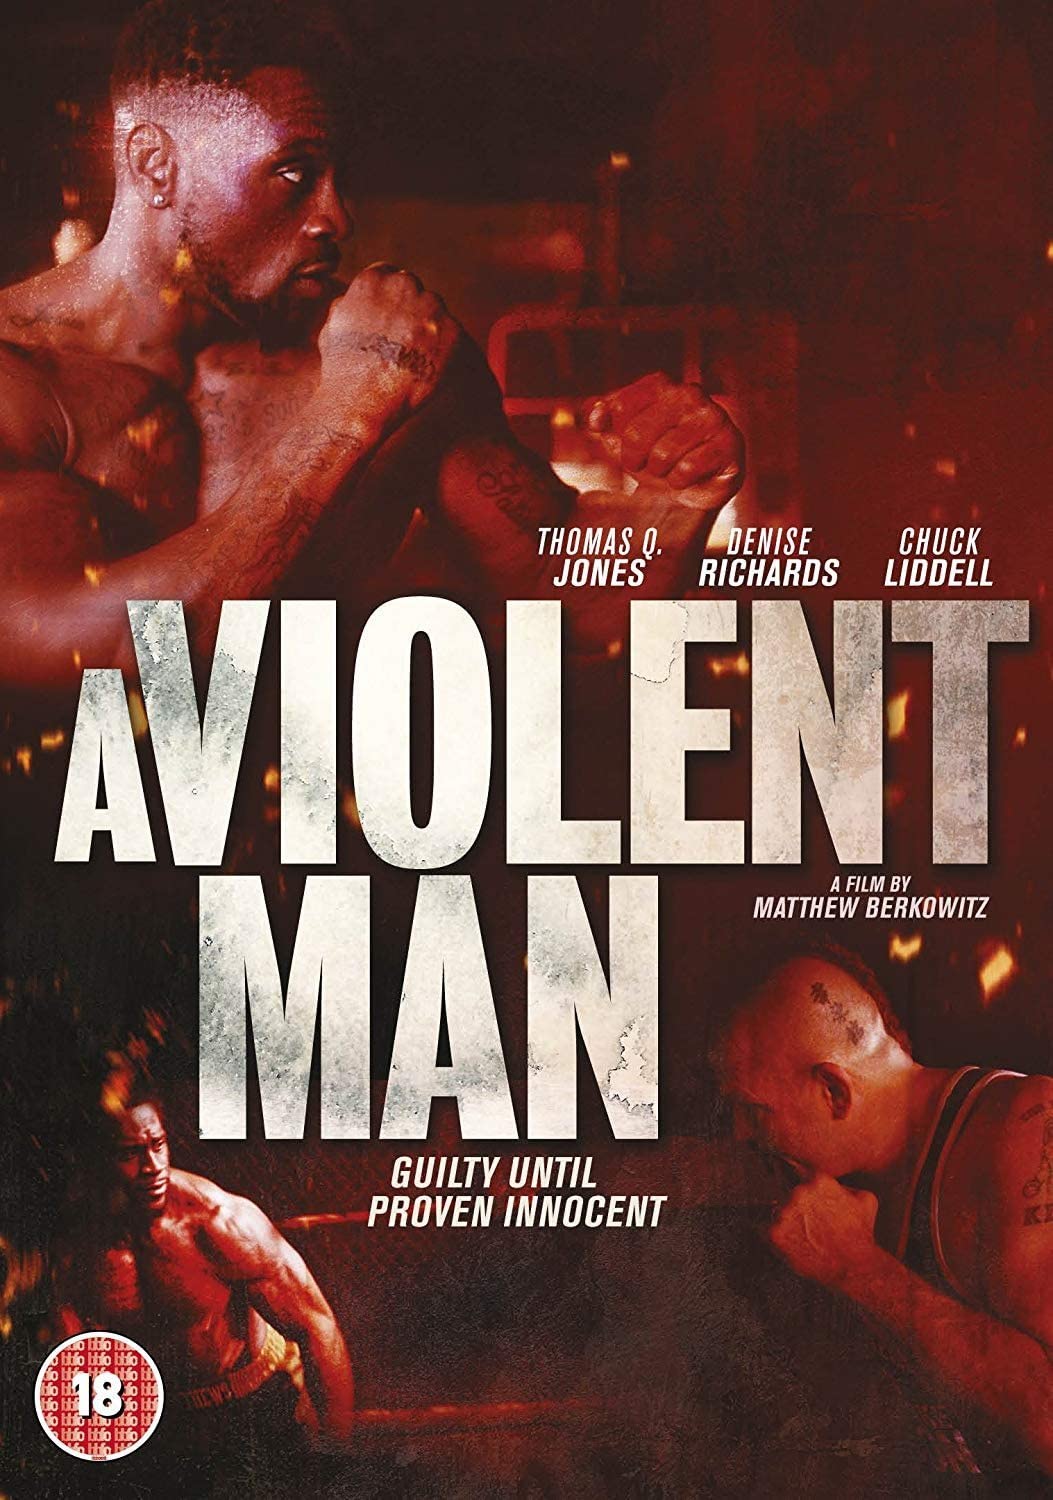 A Violent Man [2018] - Crime/Thriller [DVD]